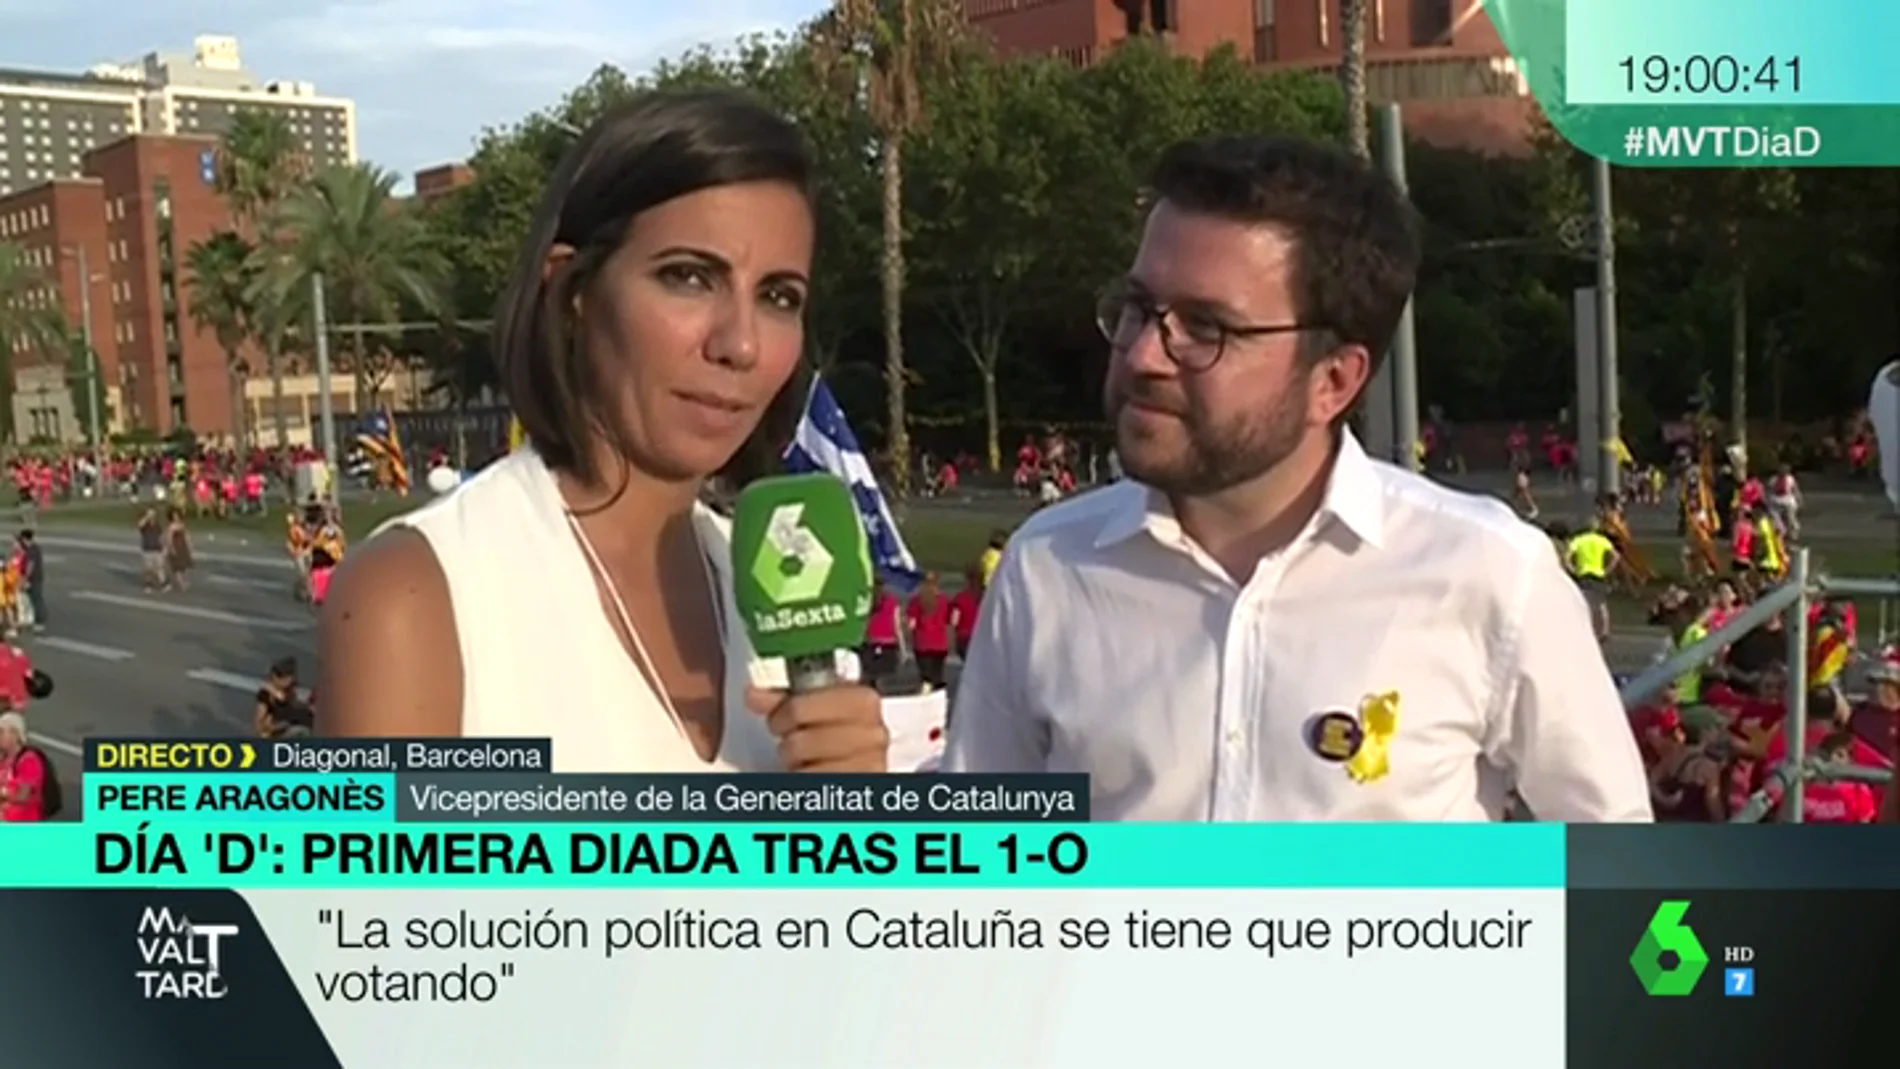 Peré Aragonés: "El independentismo es diverso. Hablamos de construir la república catalana para todos"